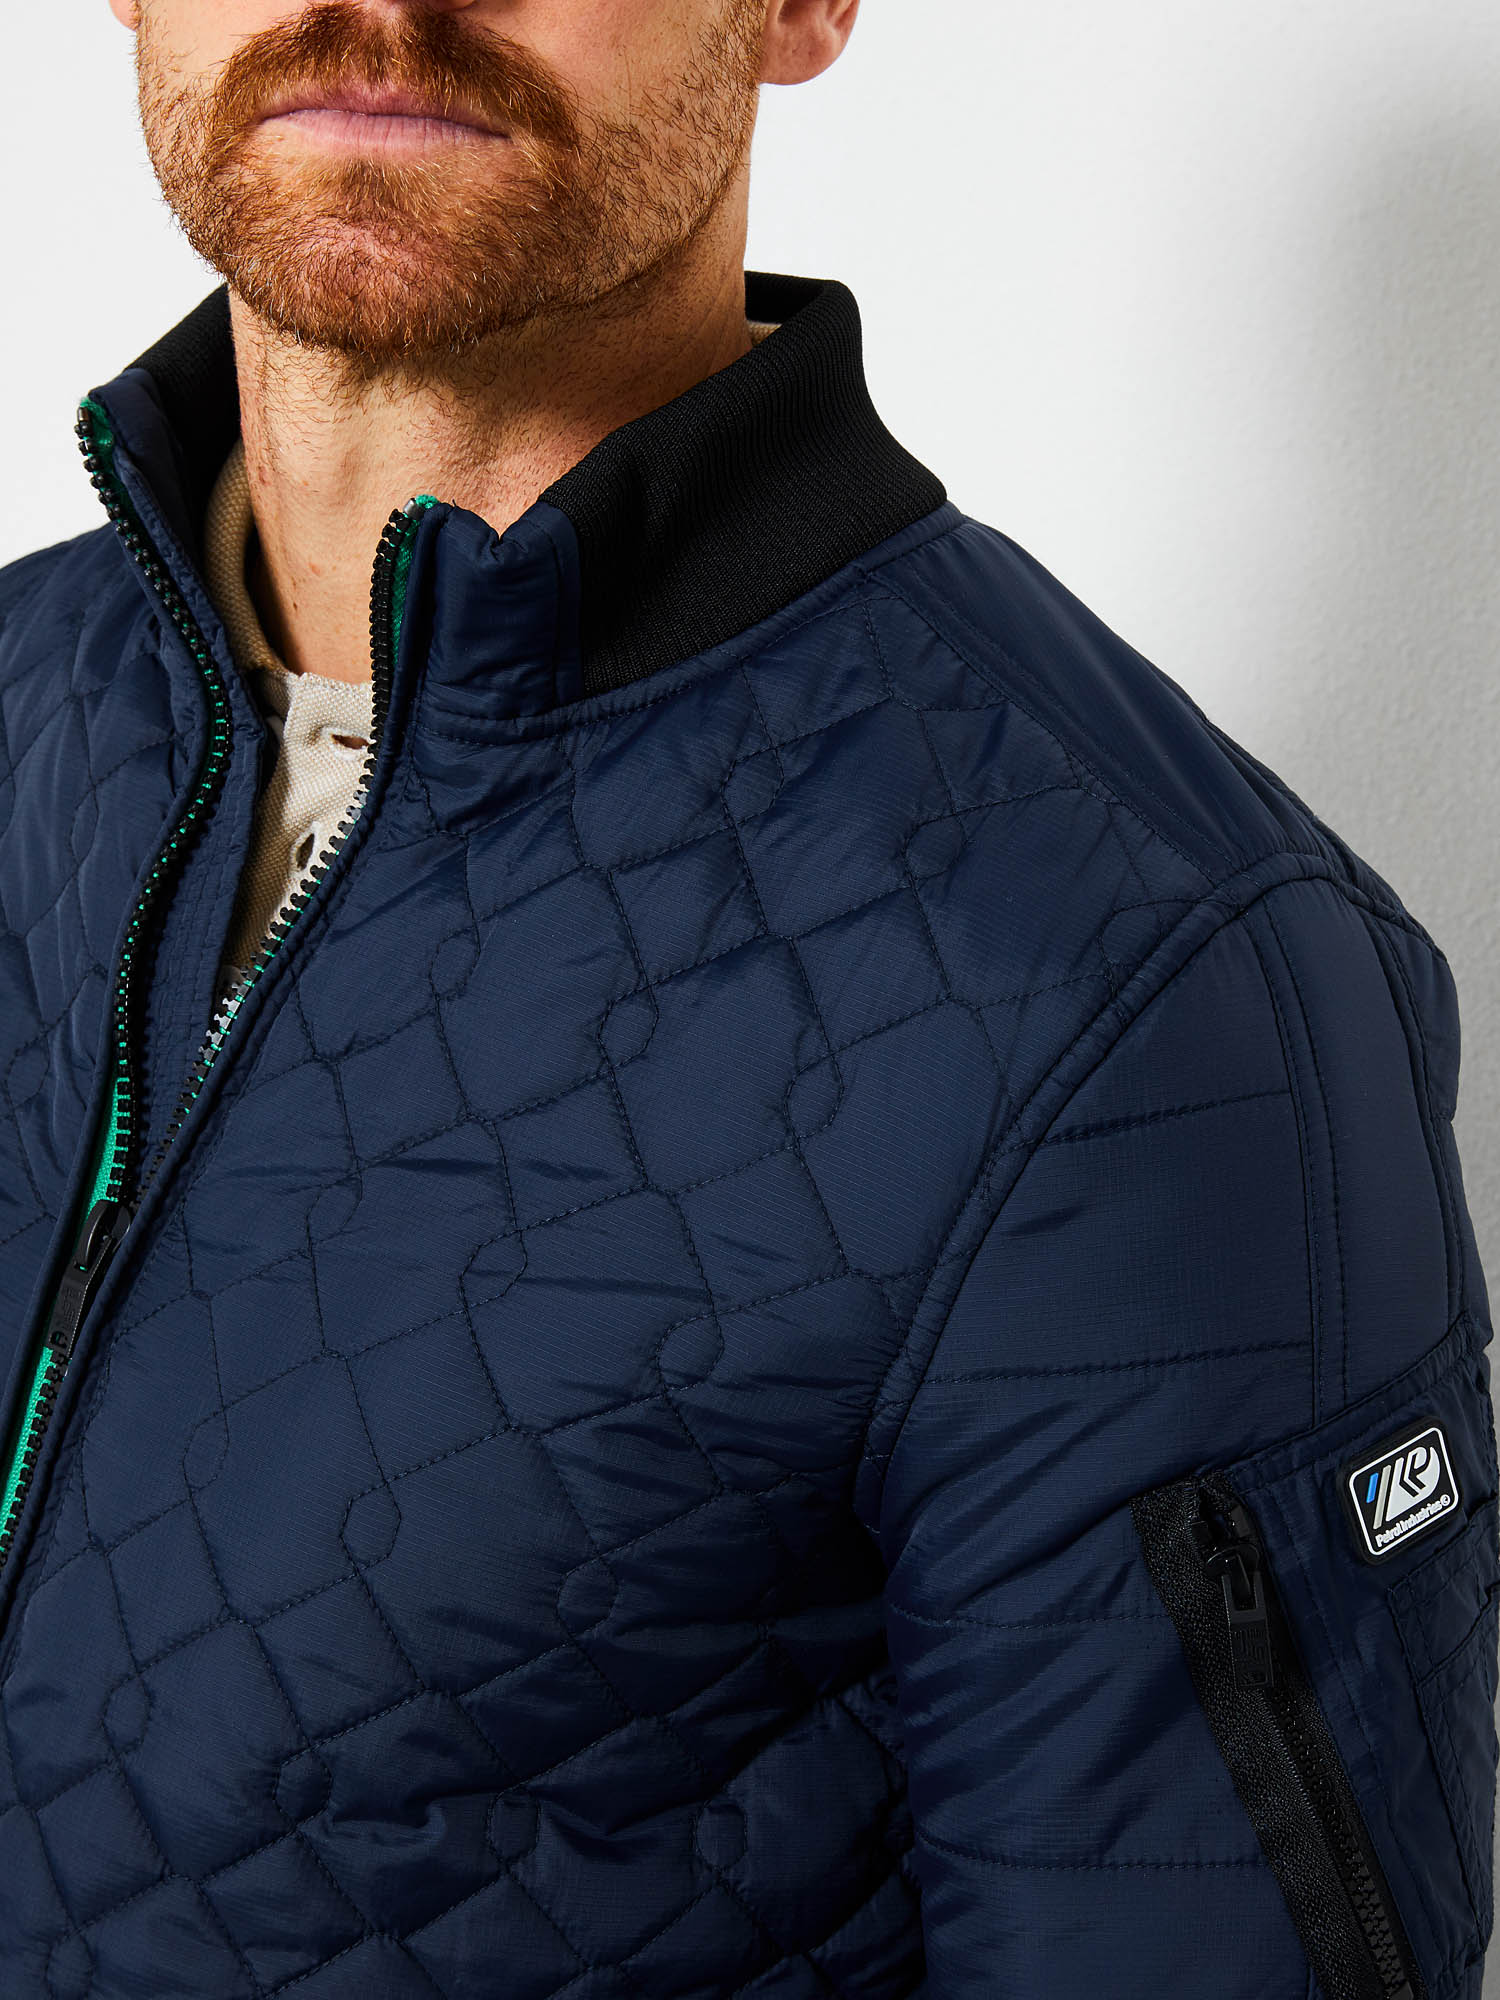 Schurk in plaats daarvan Maan oppervlakte Petrol Industries Quilted jacket Deep Capri - J Style Menswear